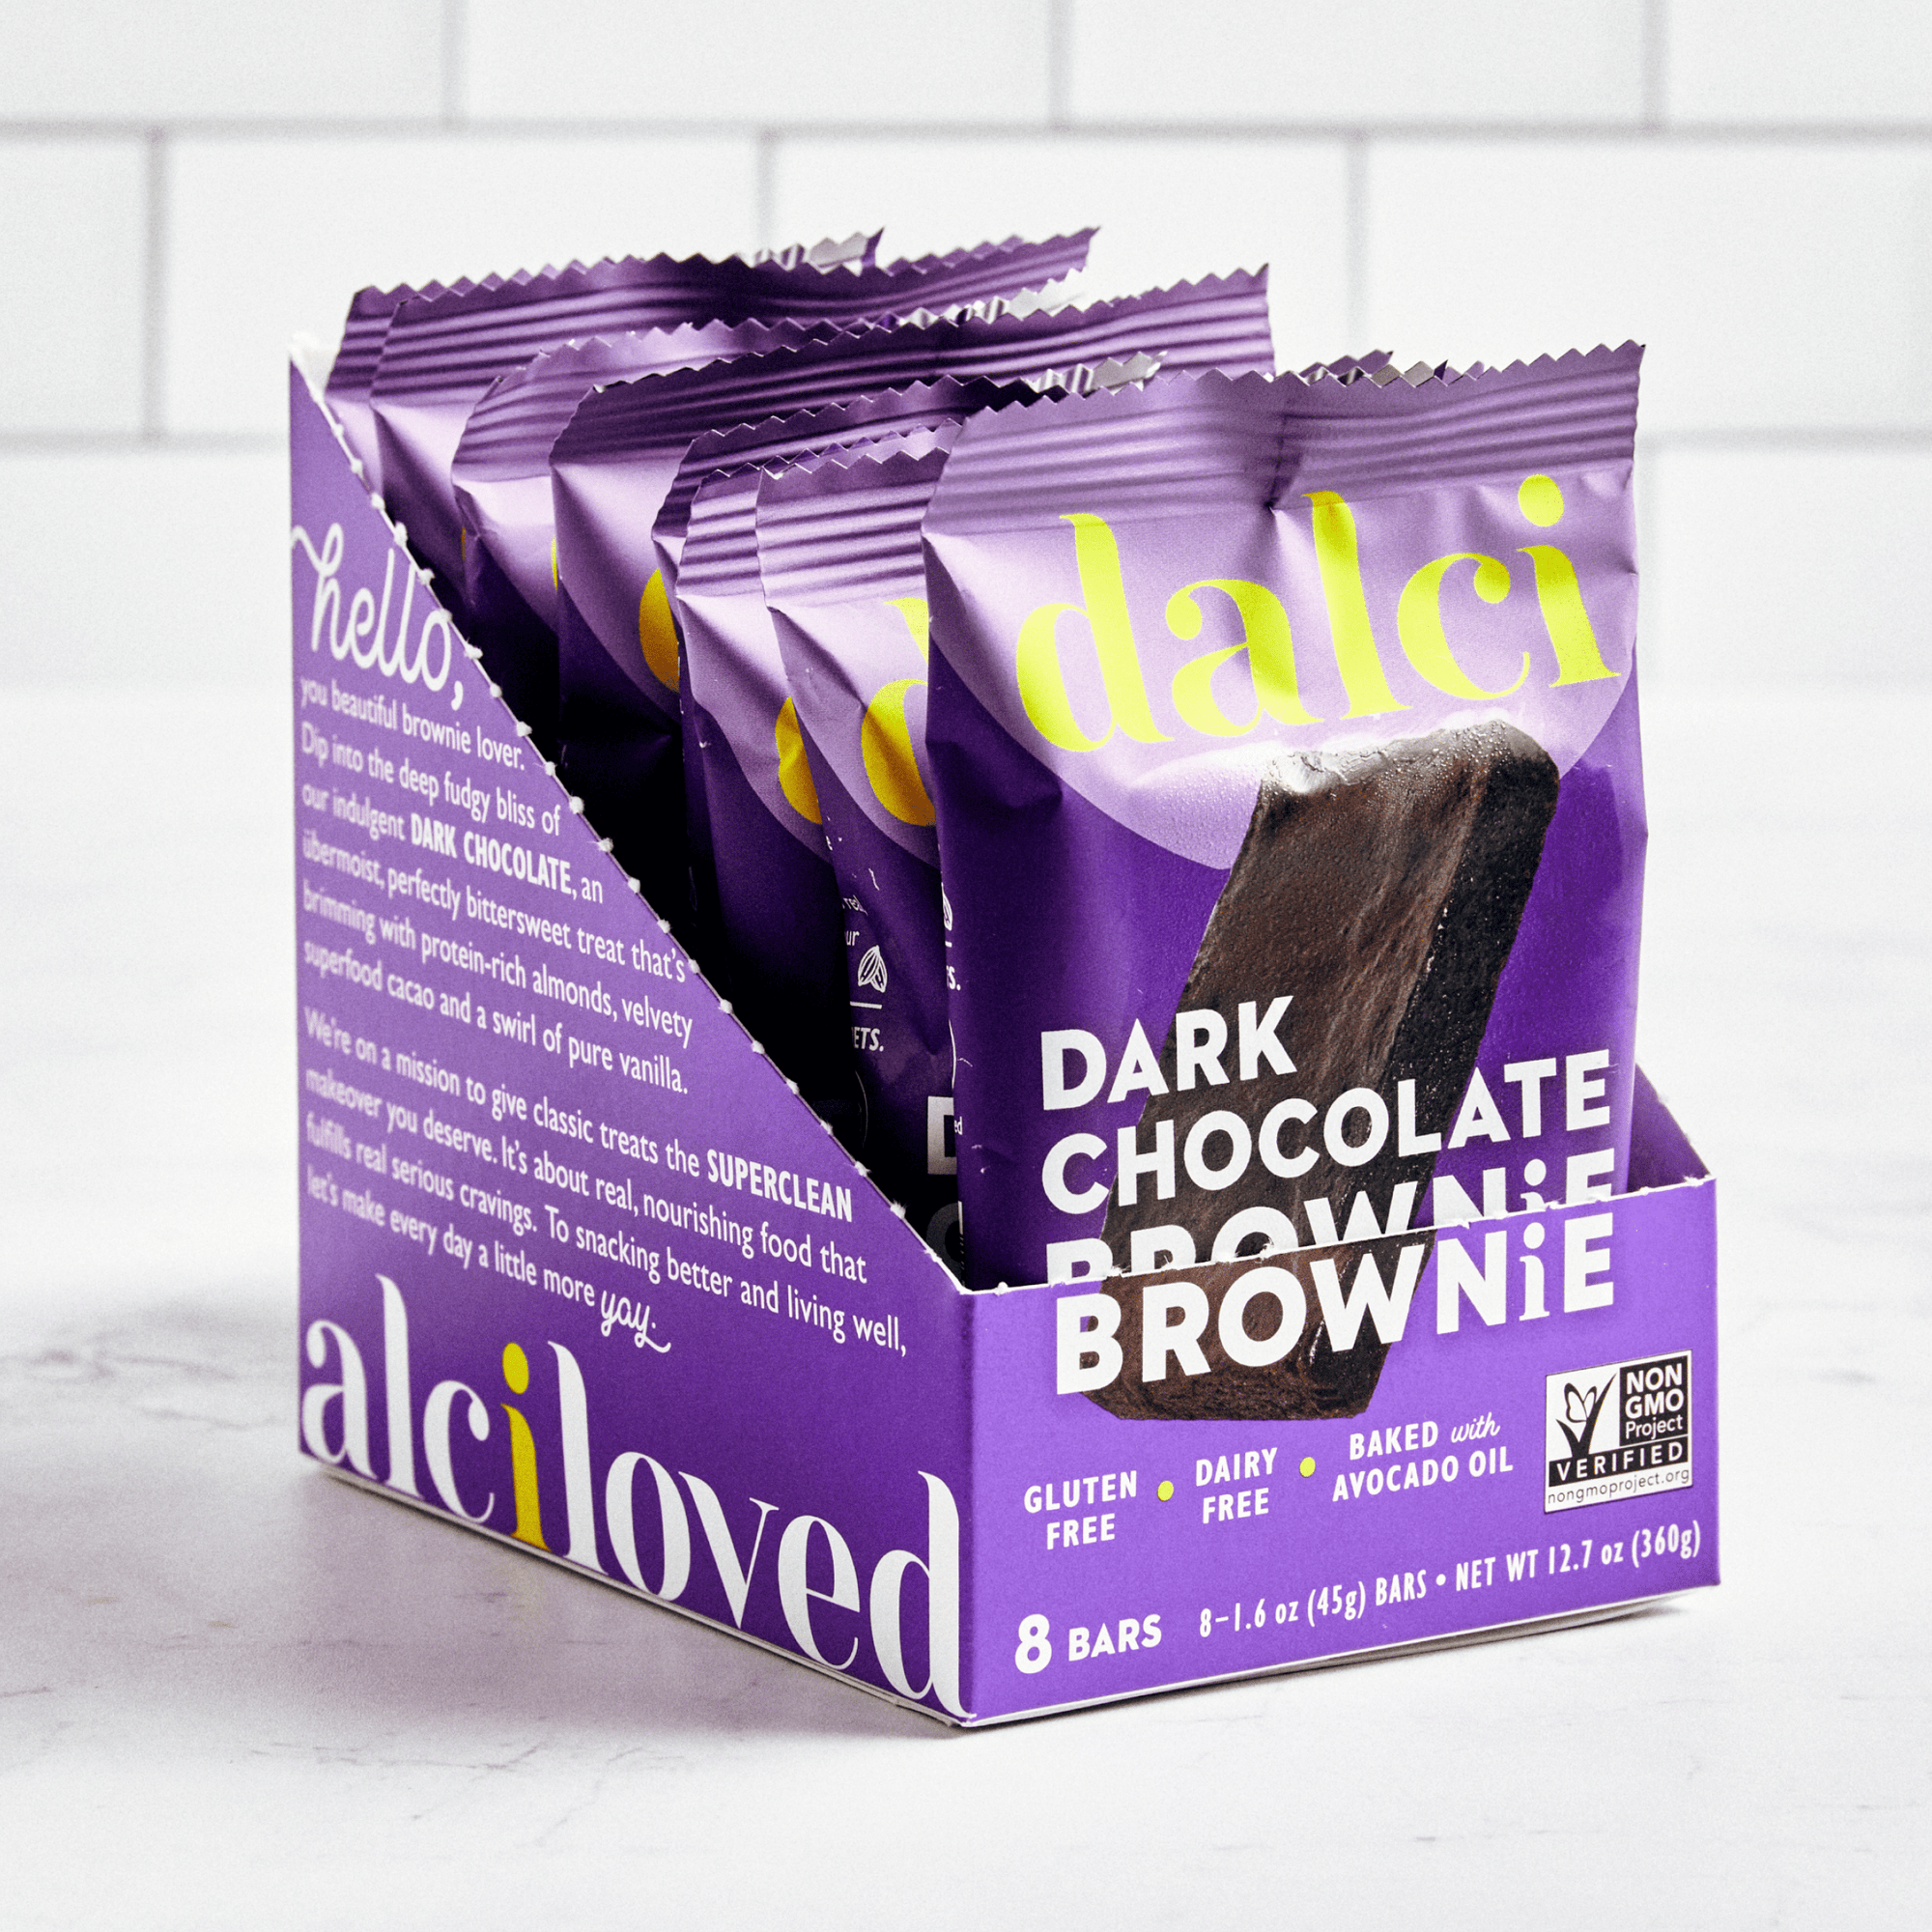 Dark Chocolate Brownie brownie dalci 